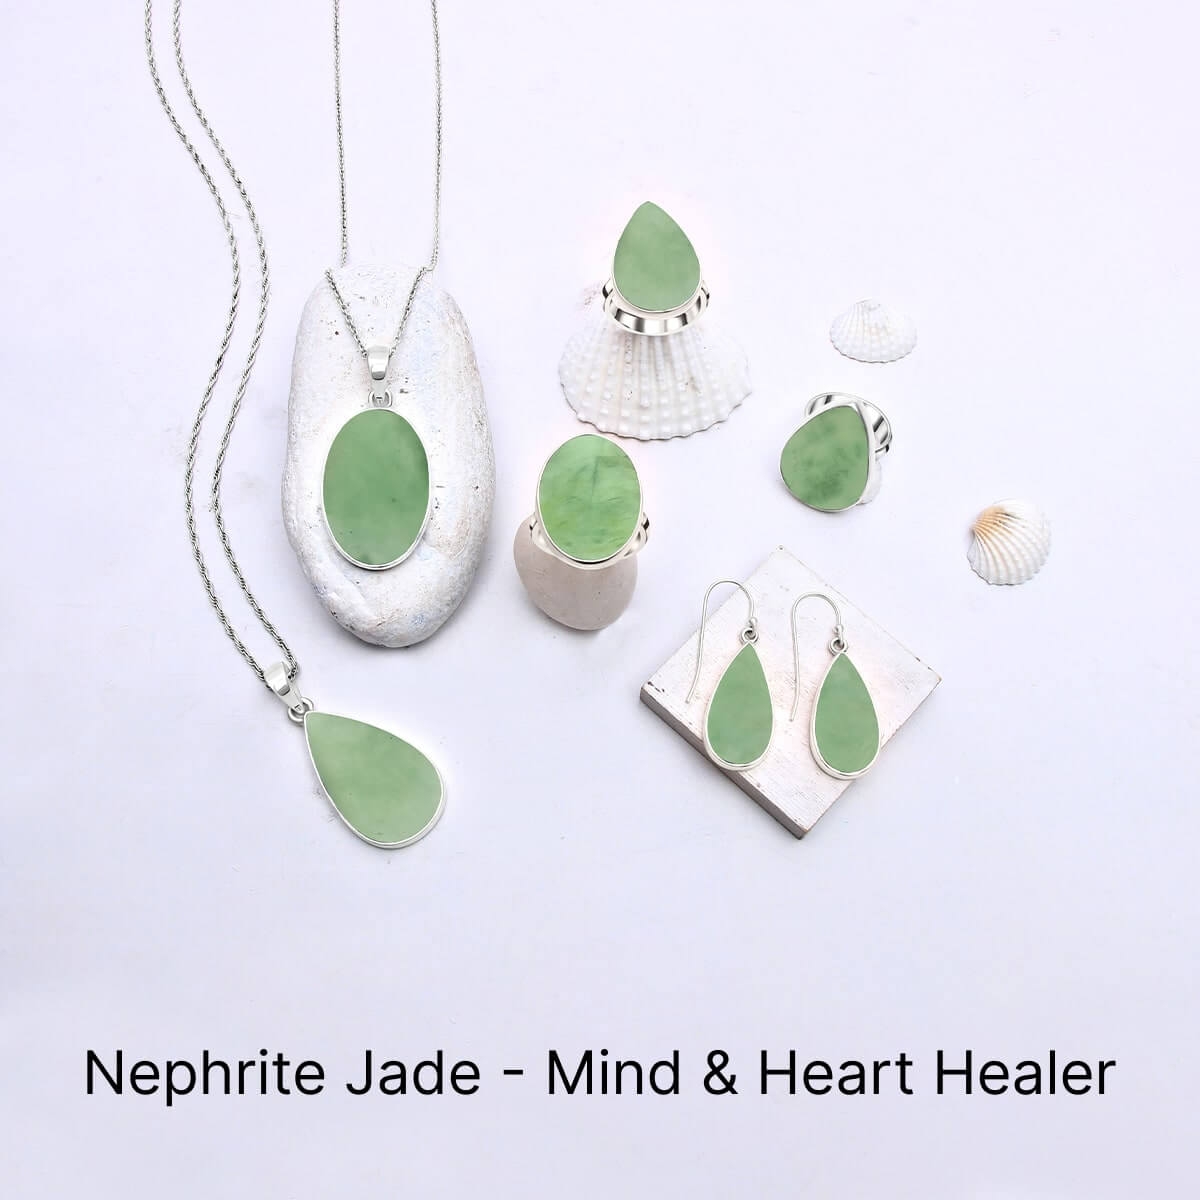 Nephrite Jade Mental & Emotional Healing Properties